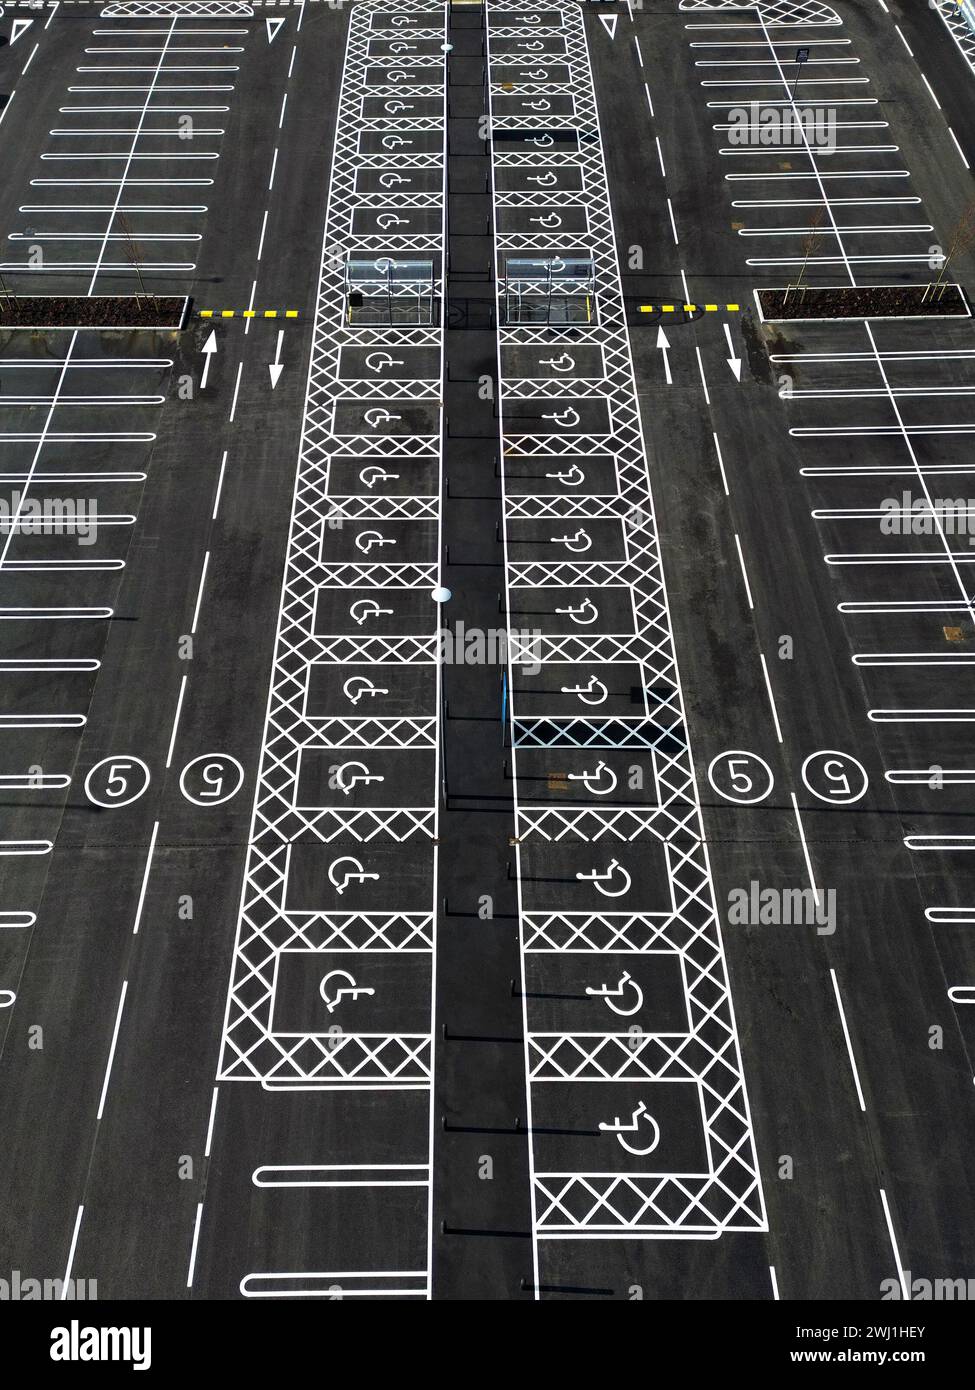 Vue aérienne d'un parking nouvellement marqué avec des places de stationnement pour handicapés Banque D'Images